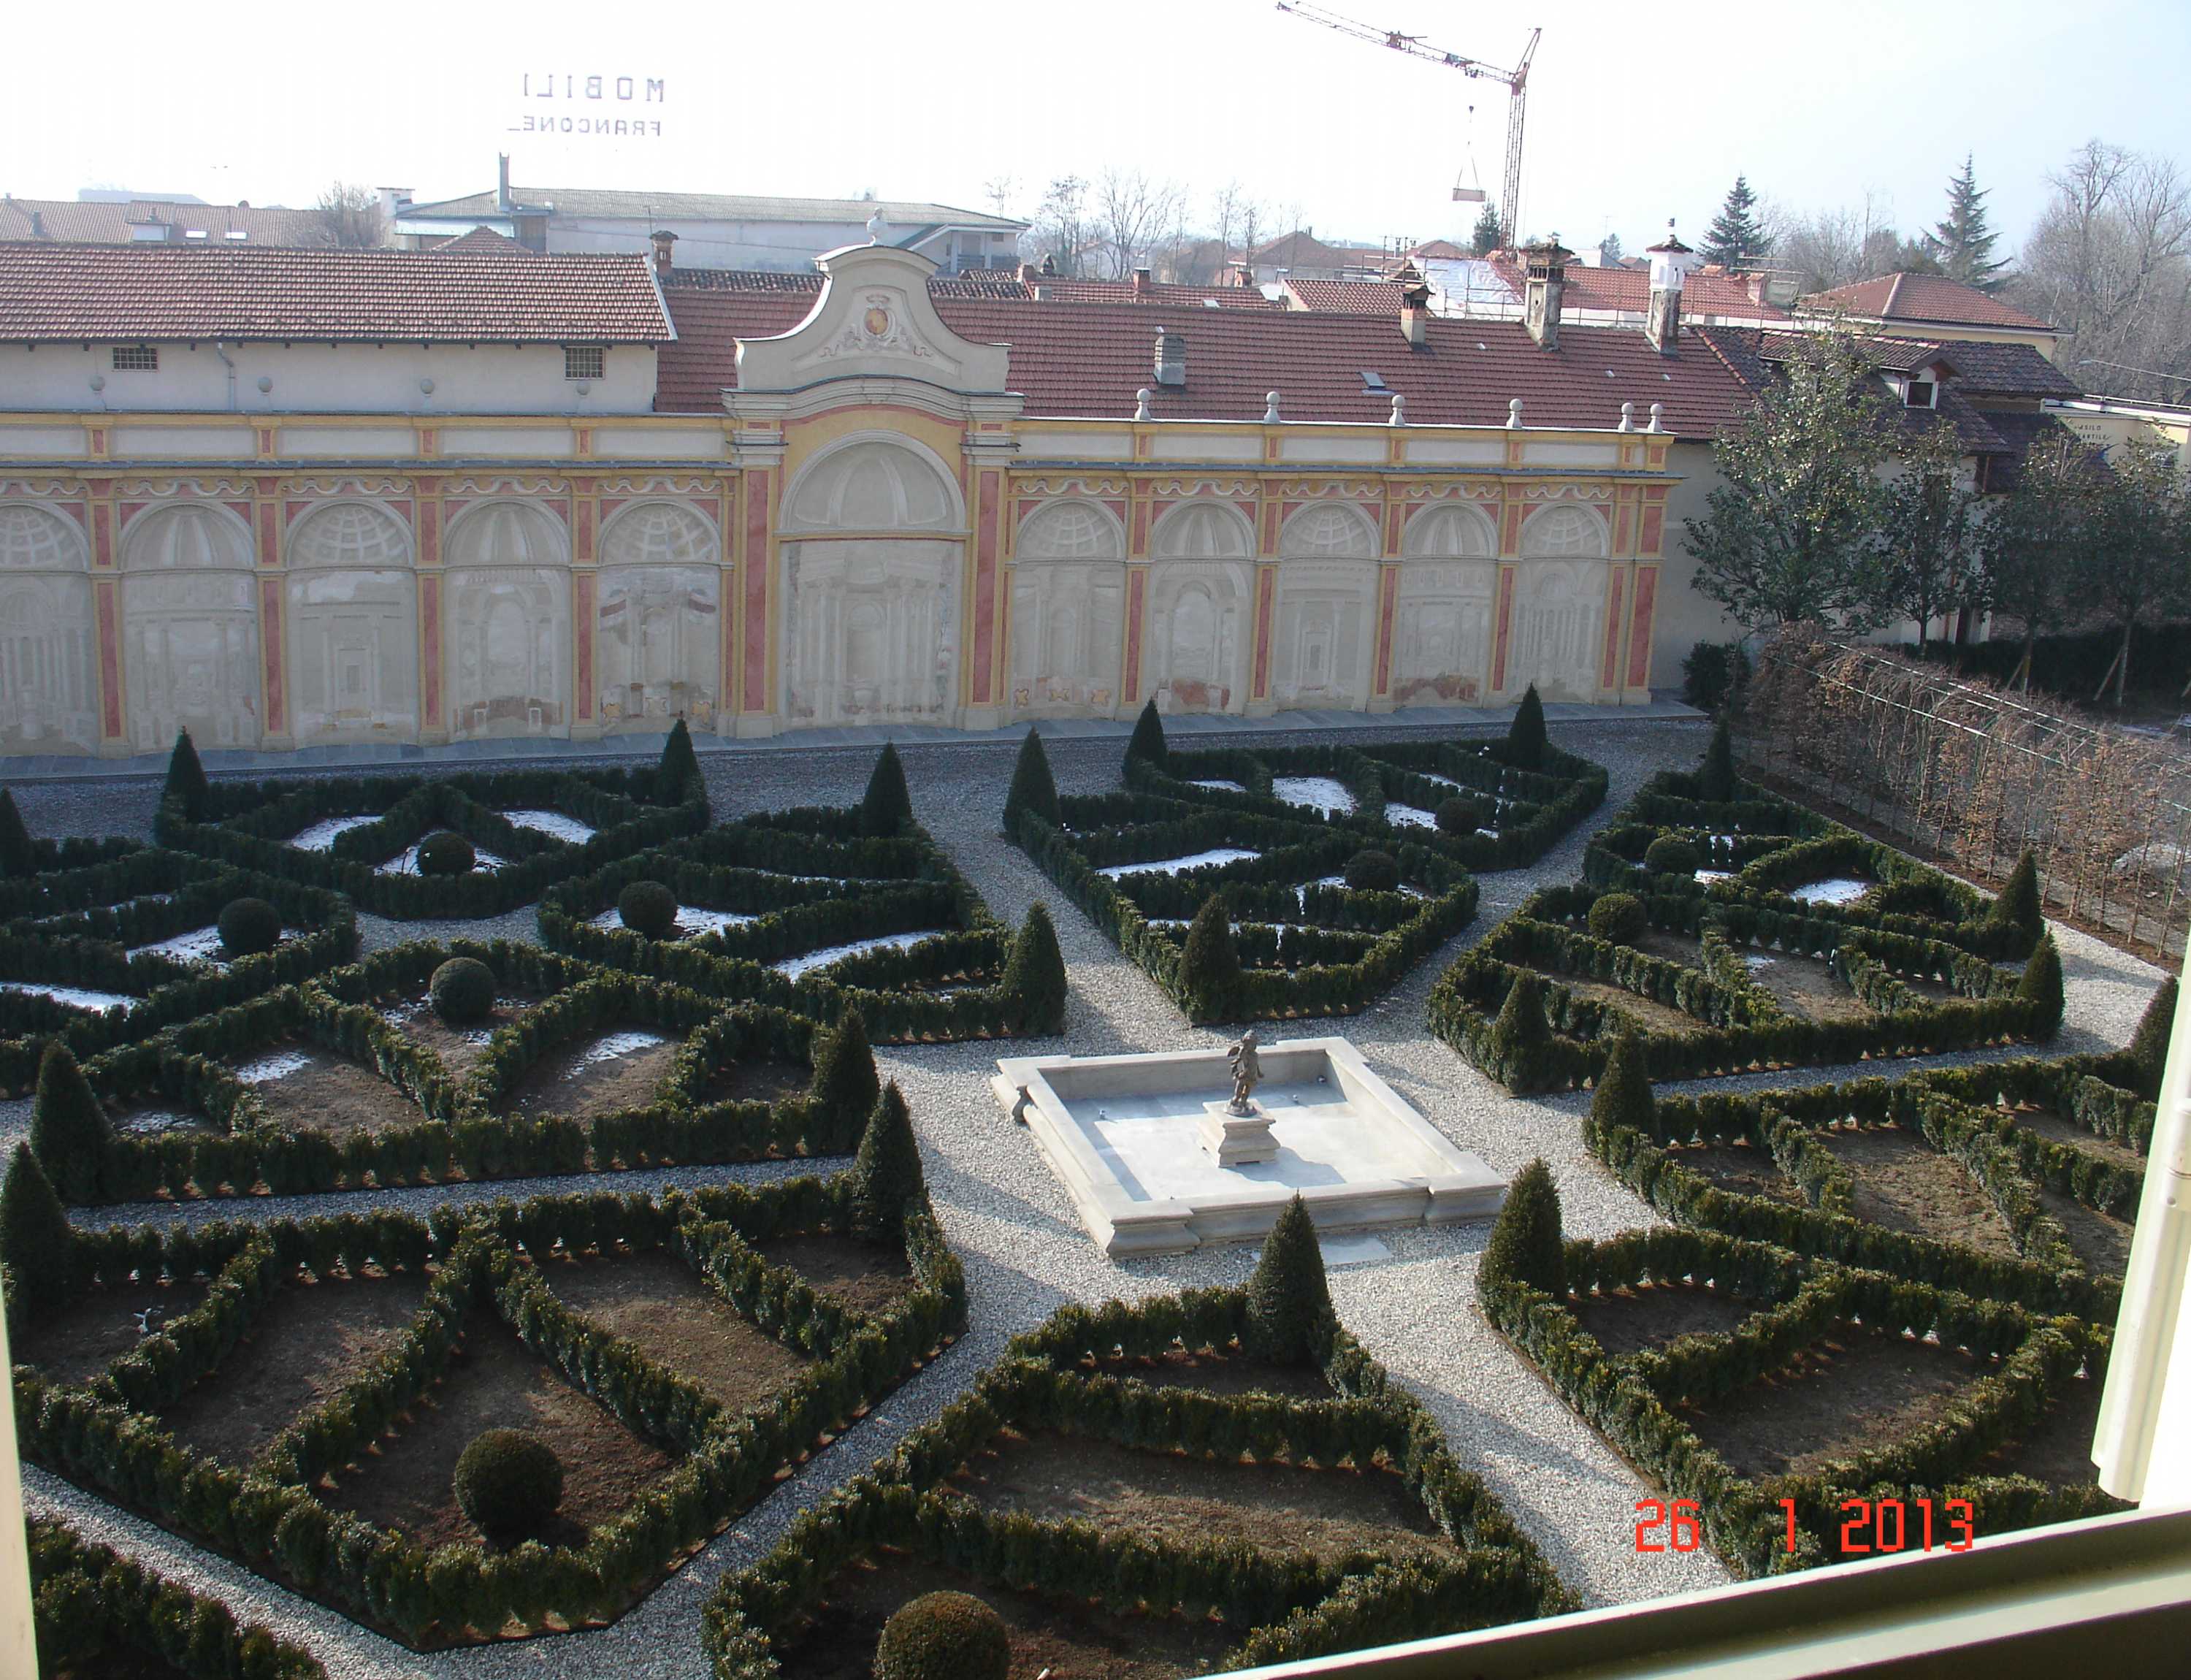 Castello di Grosso - giardino all'italiana fronte castello